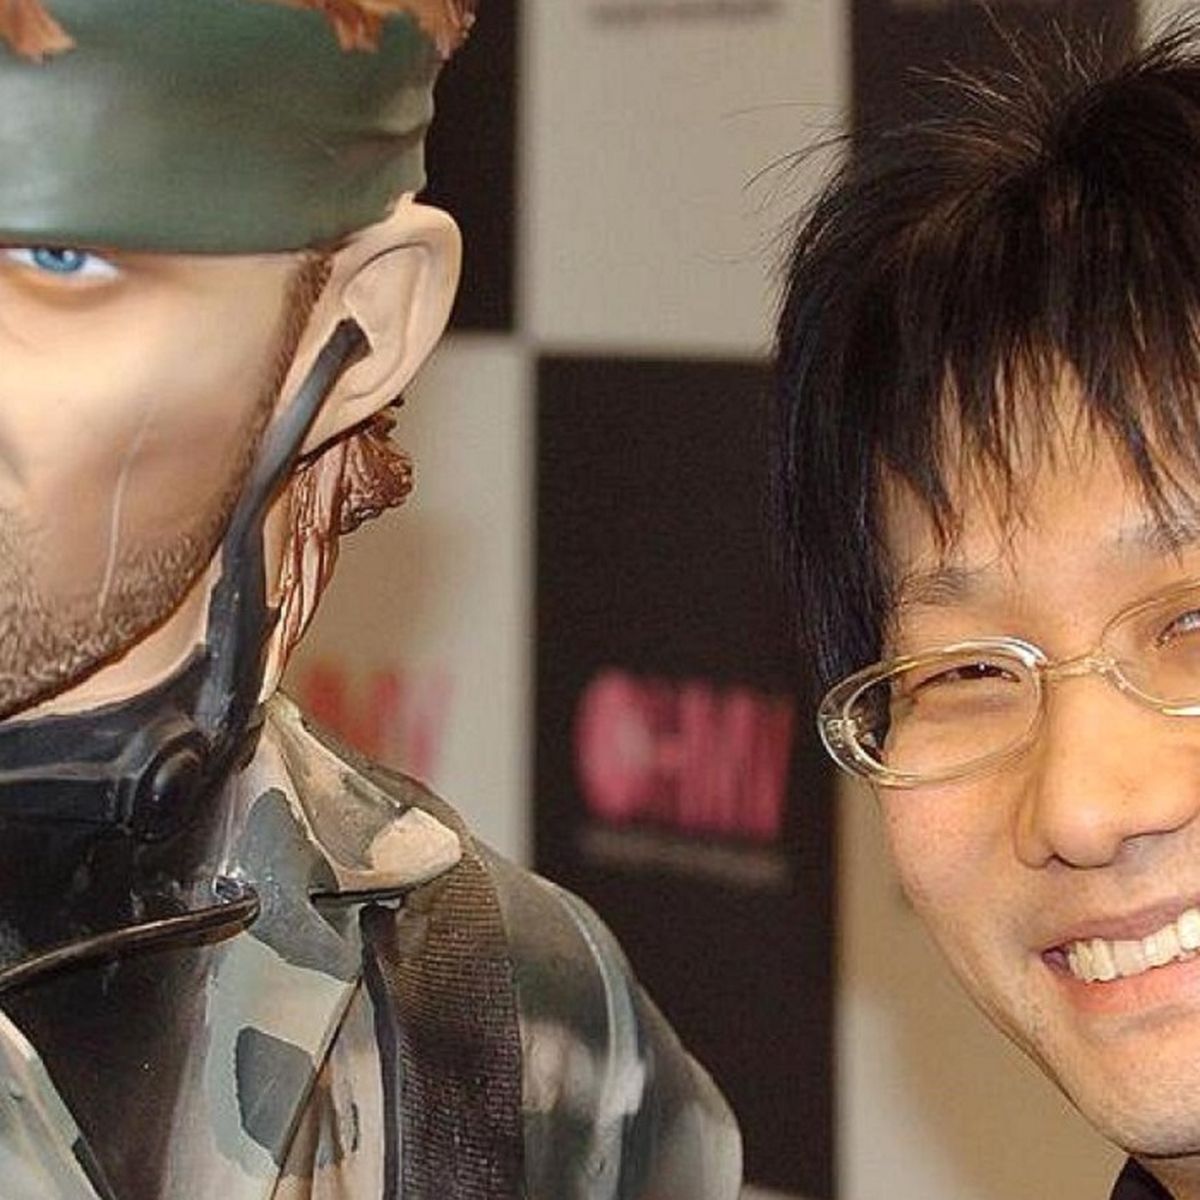 G1 > Games - NOTÍCIAS - Hideo Kojima, visionário dos games, afirma que os  consoles estão morrendo